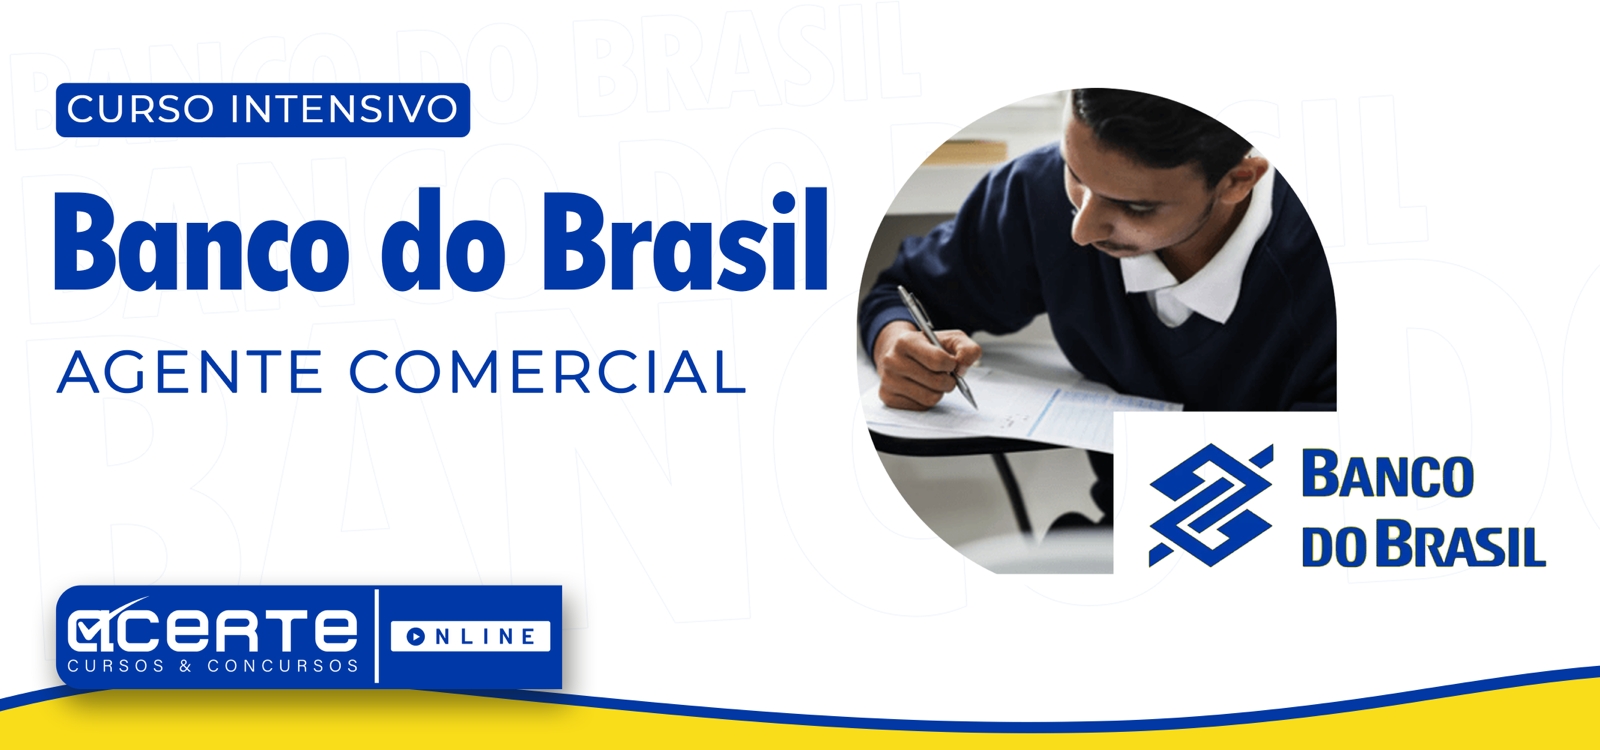 Banco do Brasil - Escriturário - Agente Comercial - ONLINE - Edital Publicado